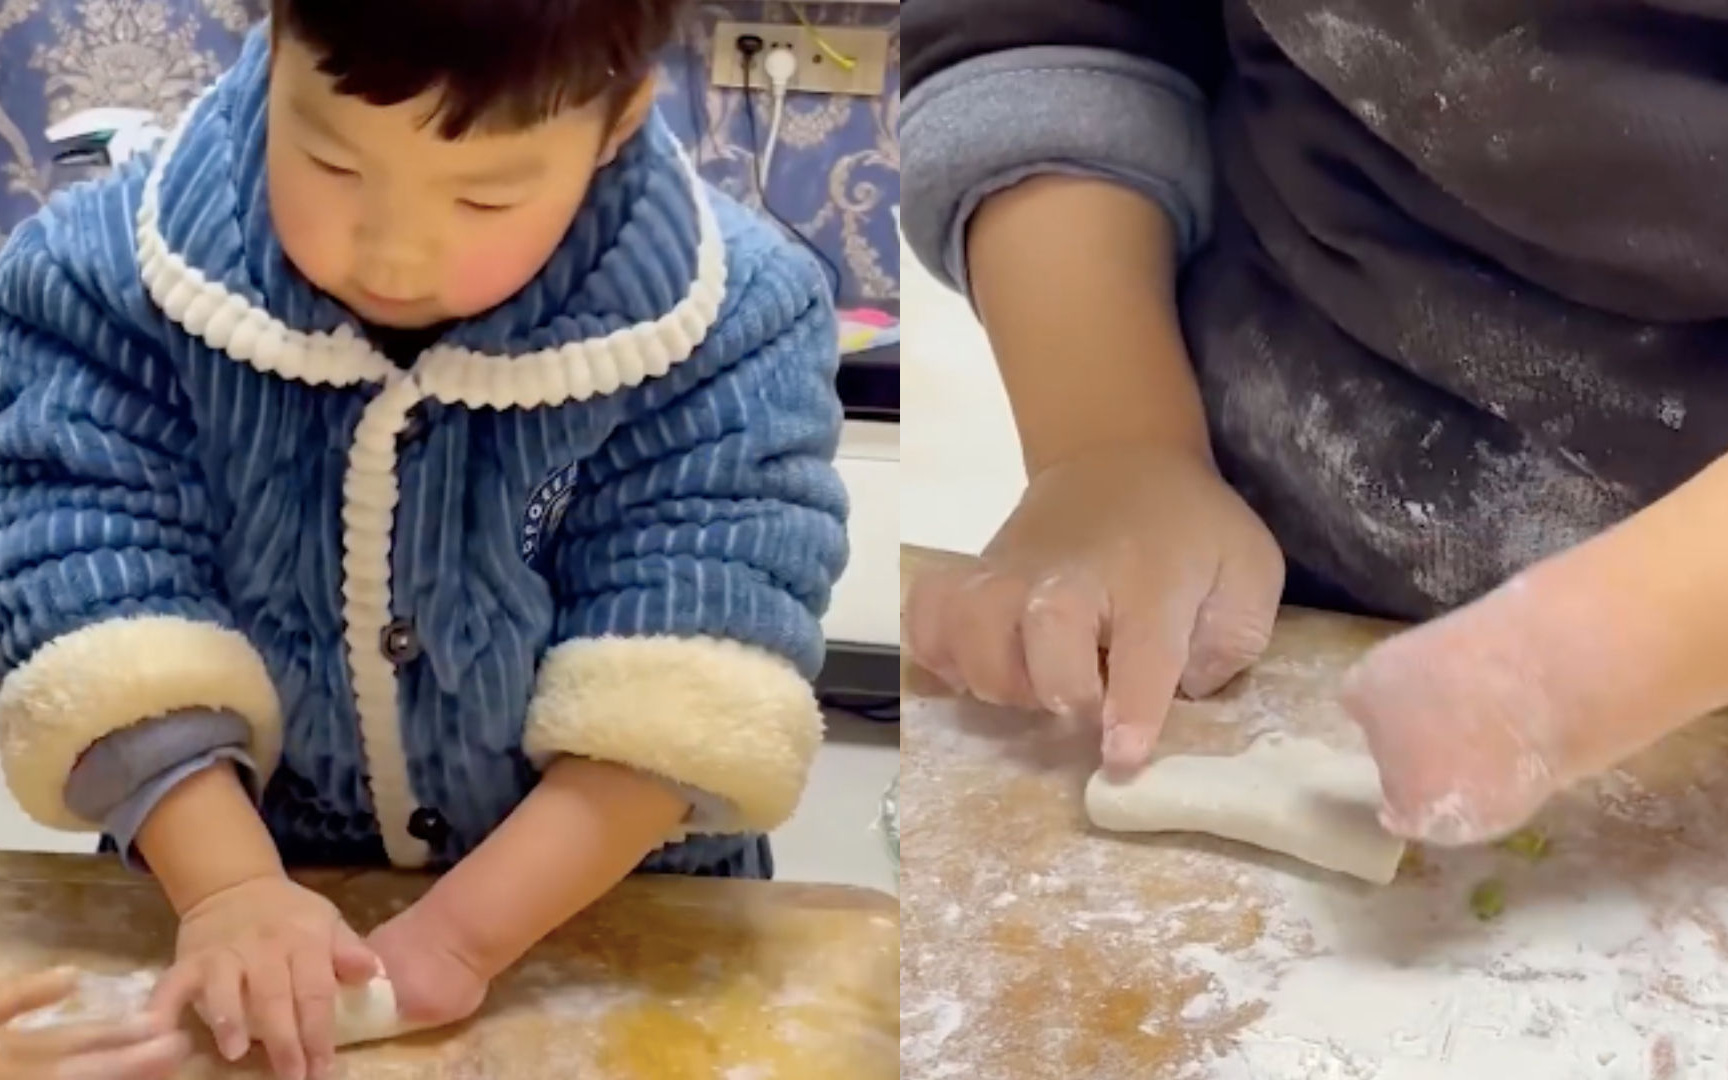 Cậu bé không có bàn tay trái vẫn nỗ lực làm bánh, lời giải thích về khiếm khuyết khiến cư dân mạng ngưỡng mộ cách dạy con của người mẹ